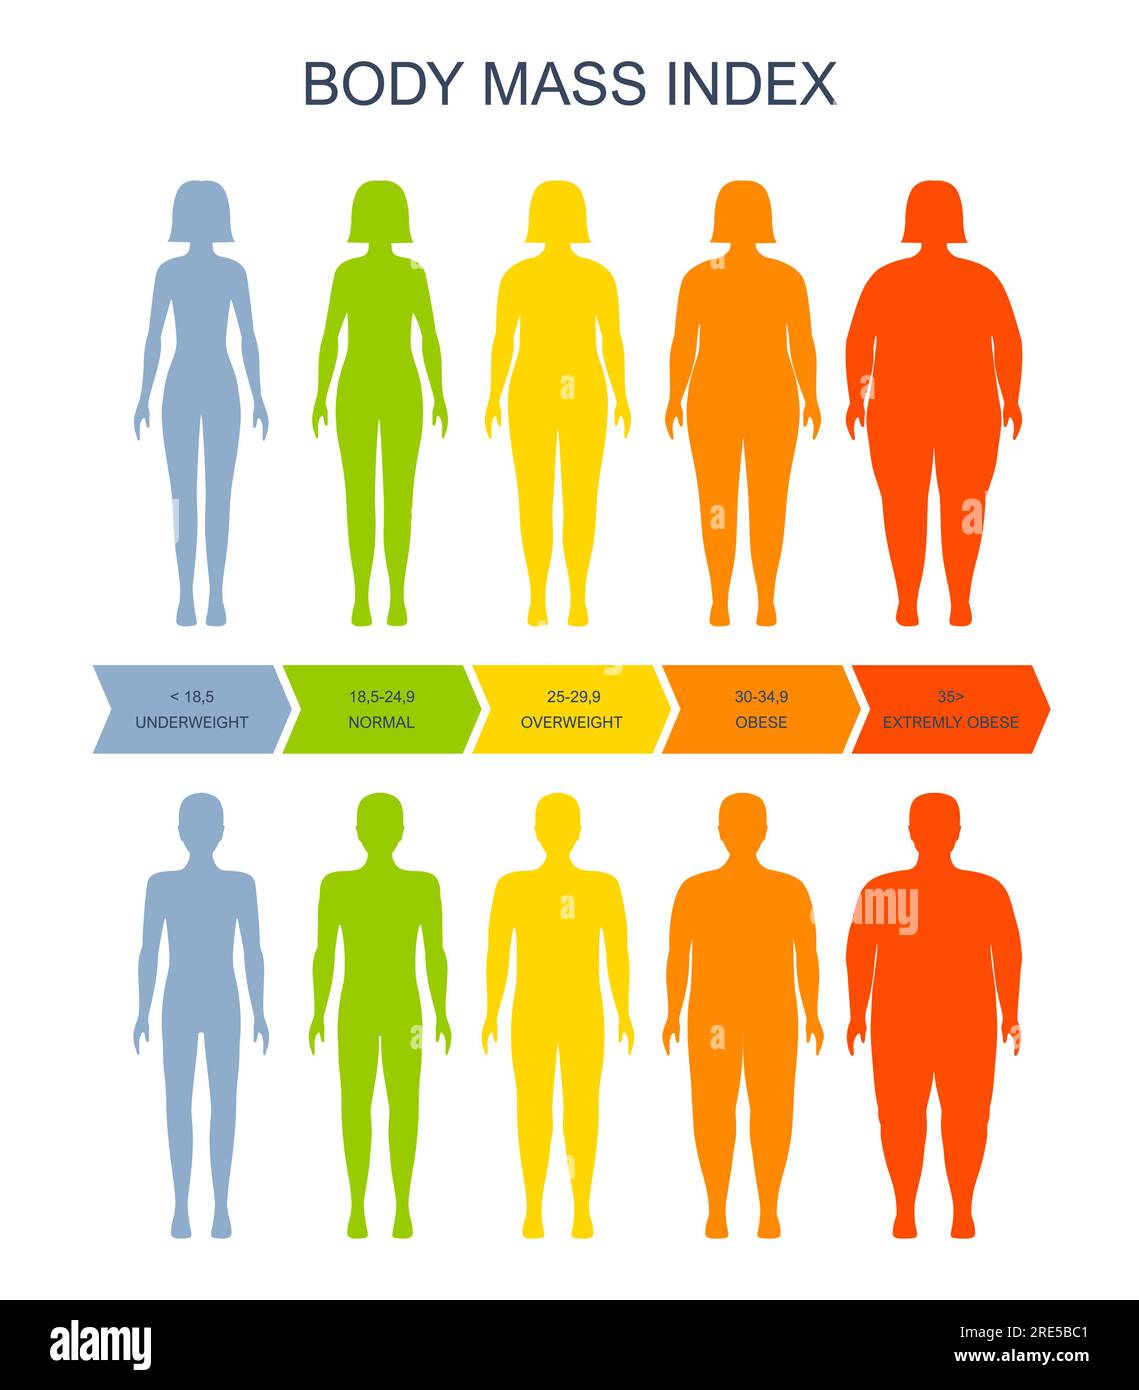 Tabella dell'indice di massa corporea, uomo e donna silhouette, scala  Vector BMI di salute, obesità e sovrappeso. Infografica sull'indice di  massa corporea sul peso obeso e sulla scala BMI sottopeso dei grassi